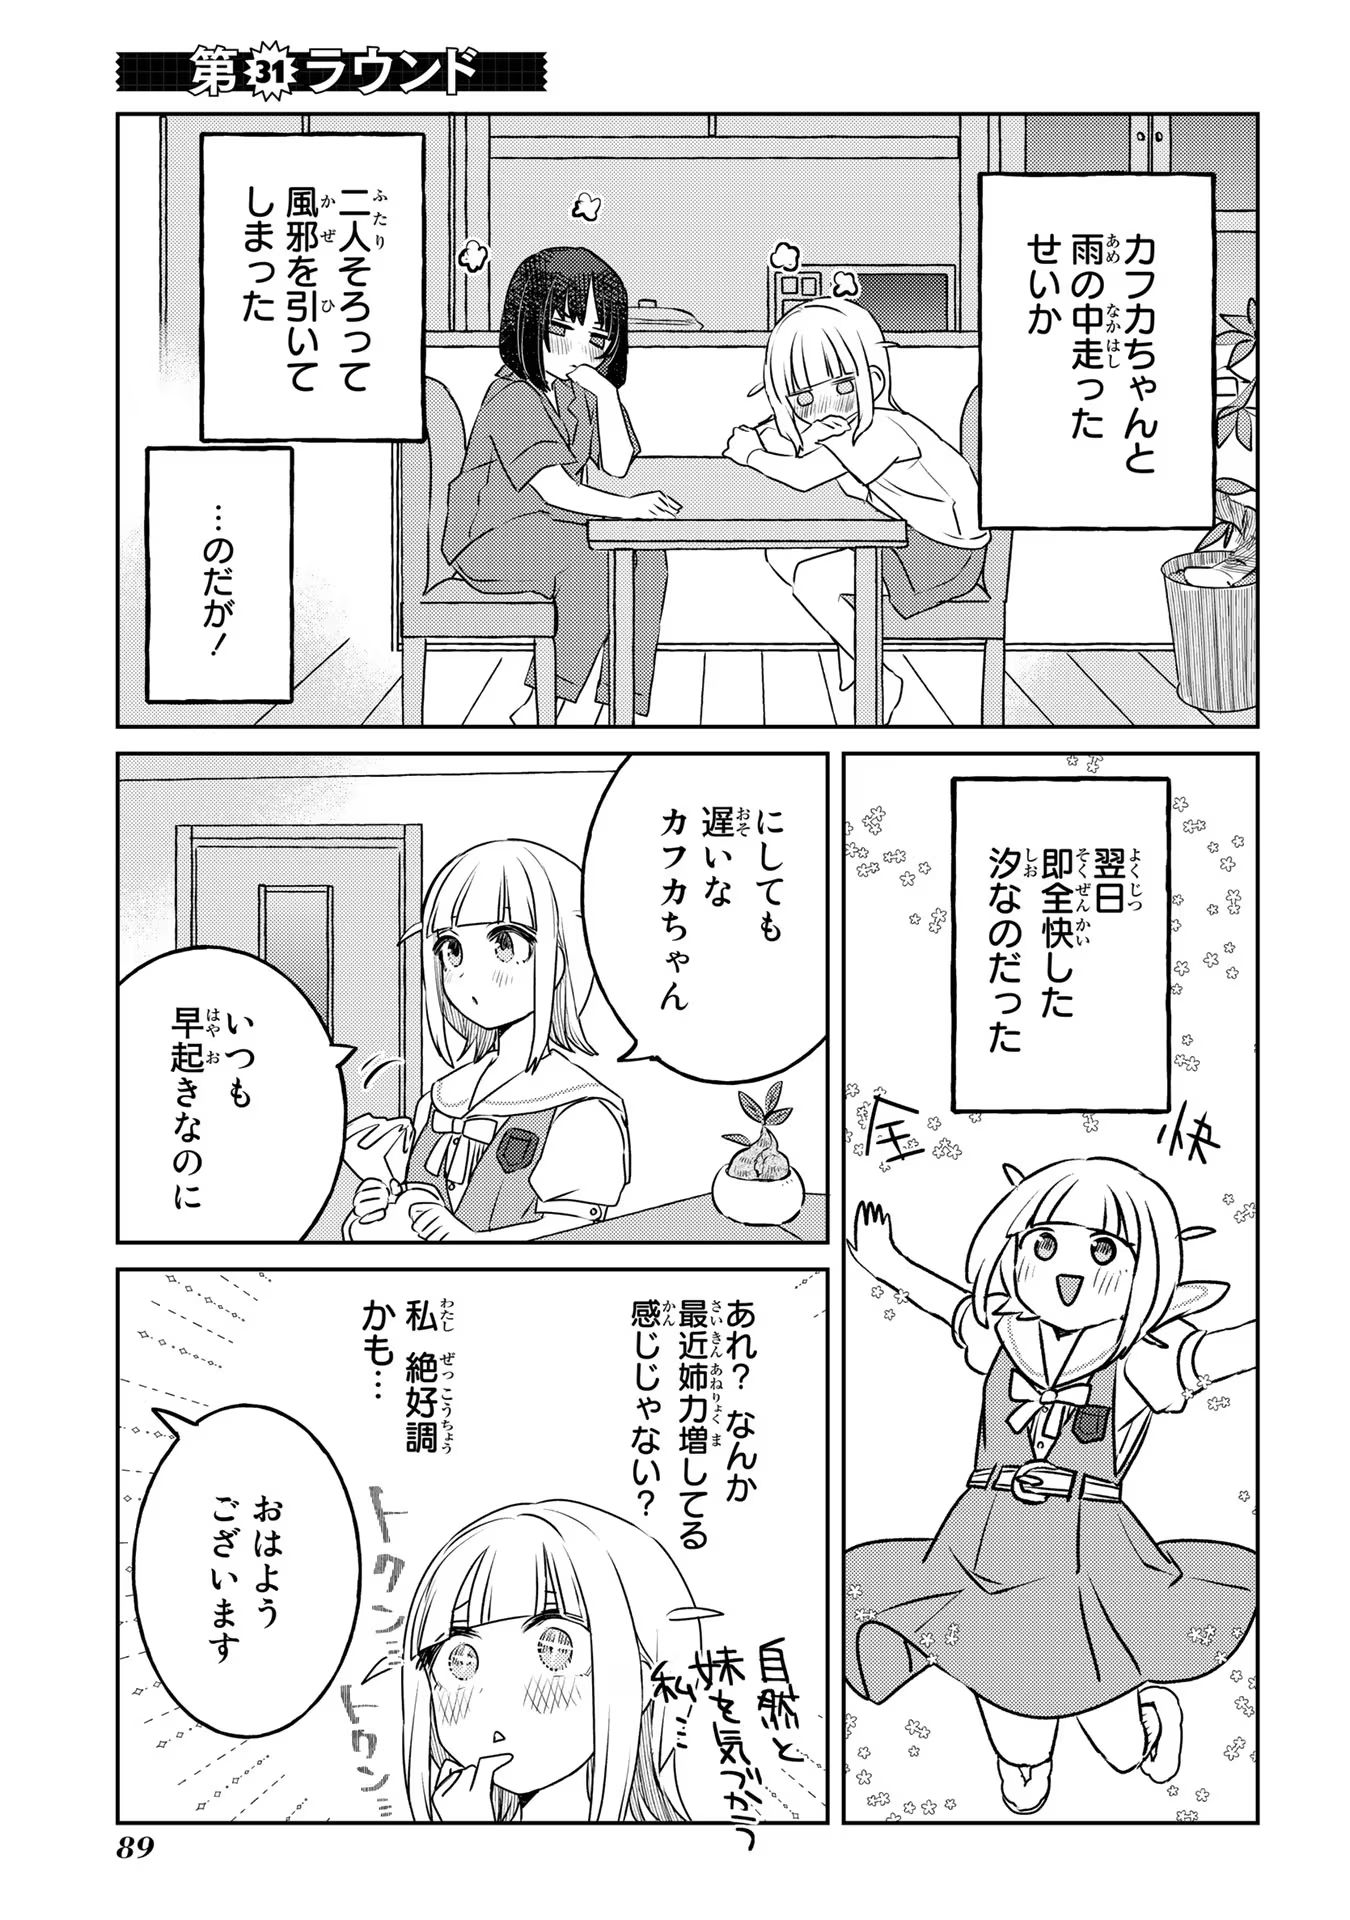 Ane ni Naritai Gishi VS Yuri ni Naritai Gimai - Chapter 31 - Page 1